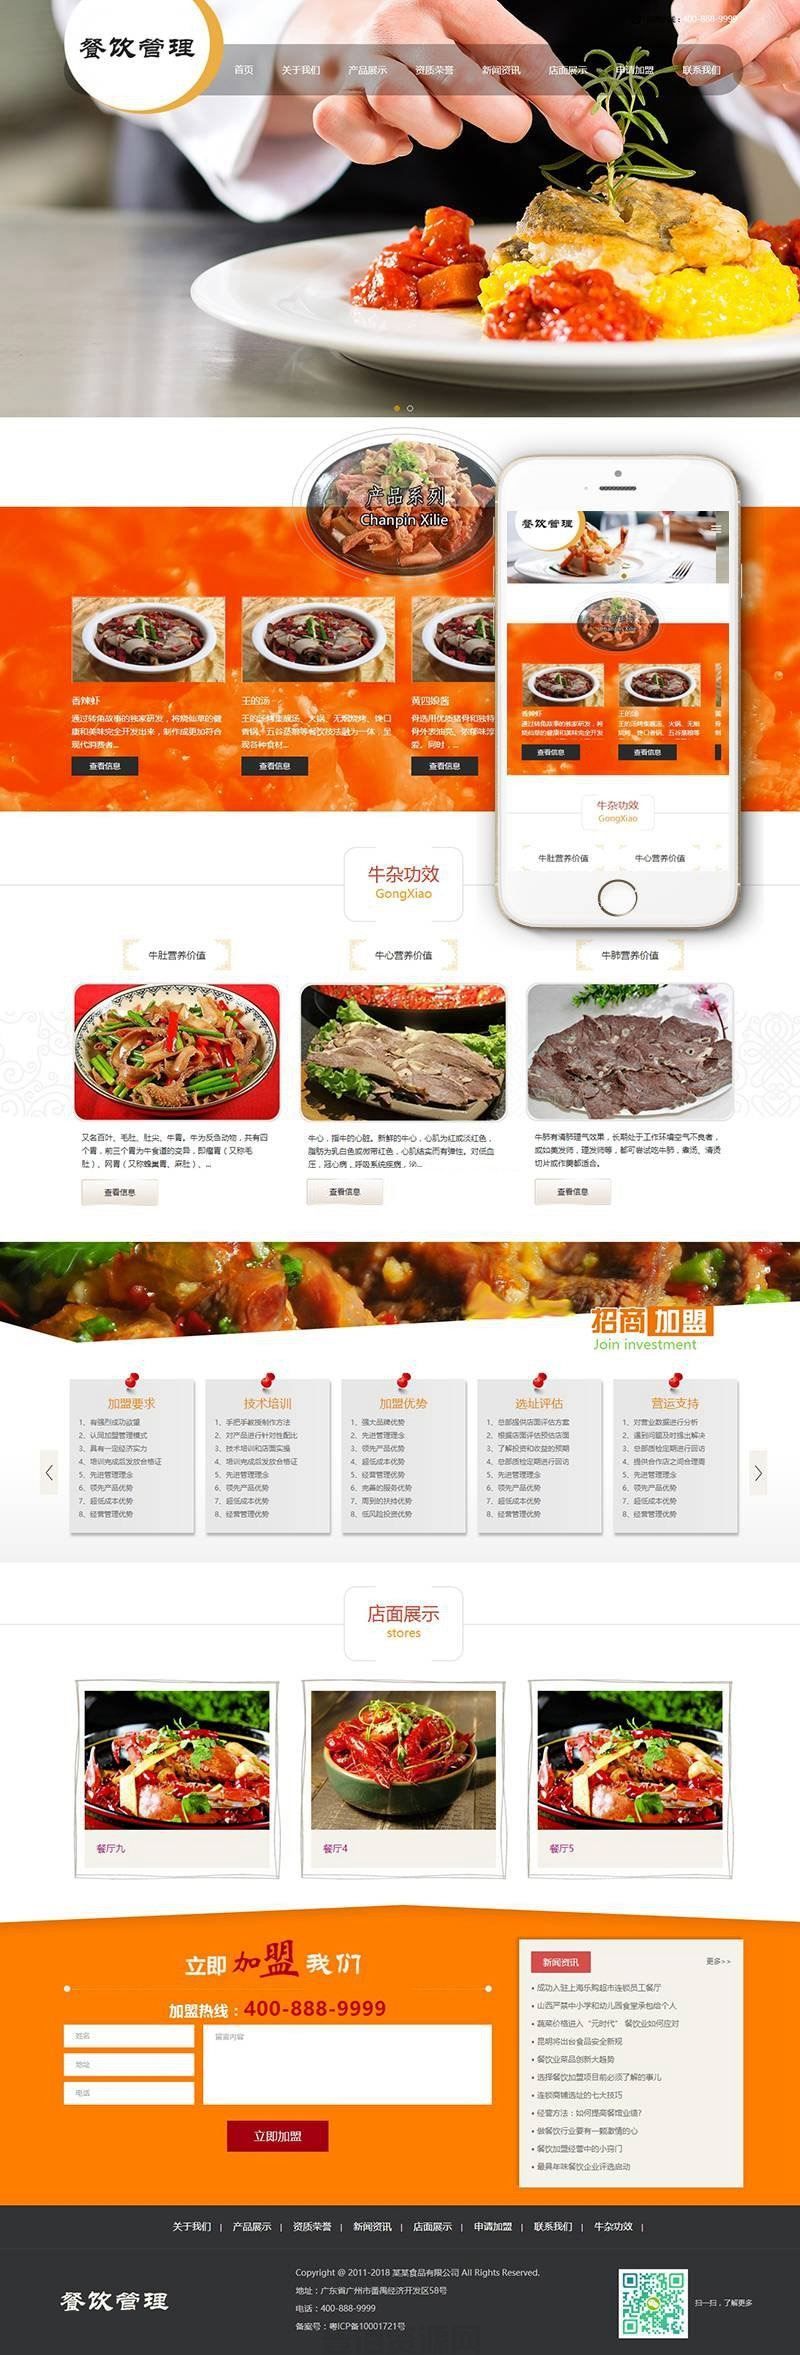 响应式餐饮牛杂小吃类网站源码 dedecms织梦模板 (带手机端)(图1)